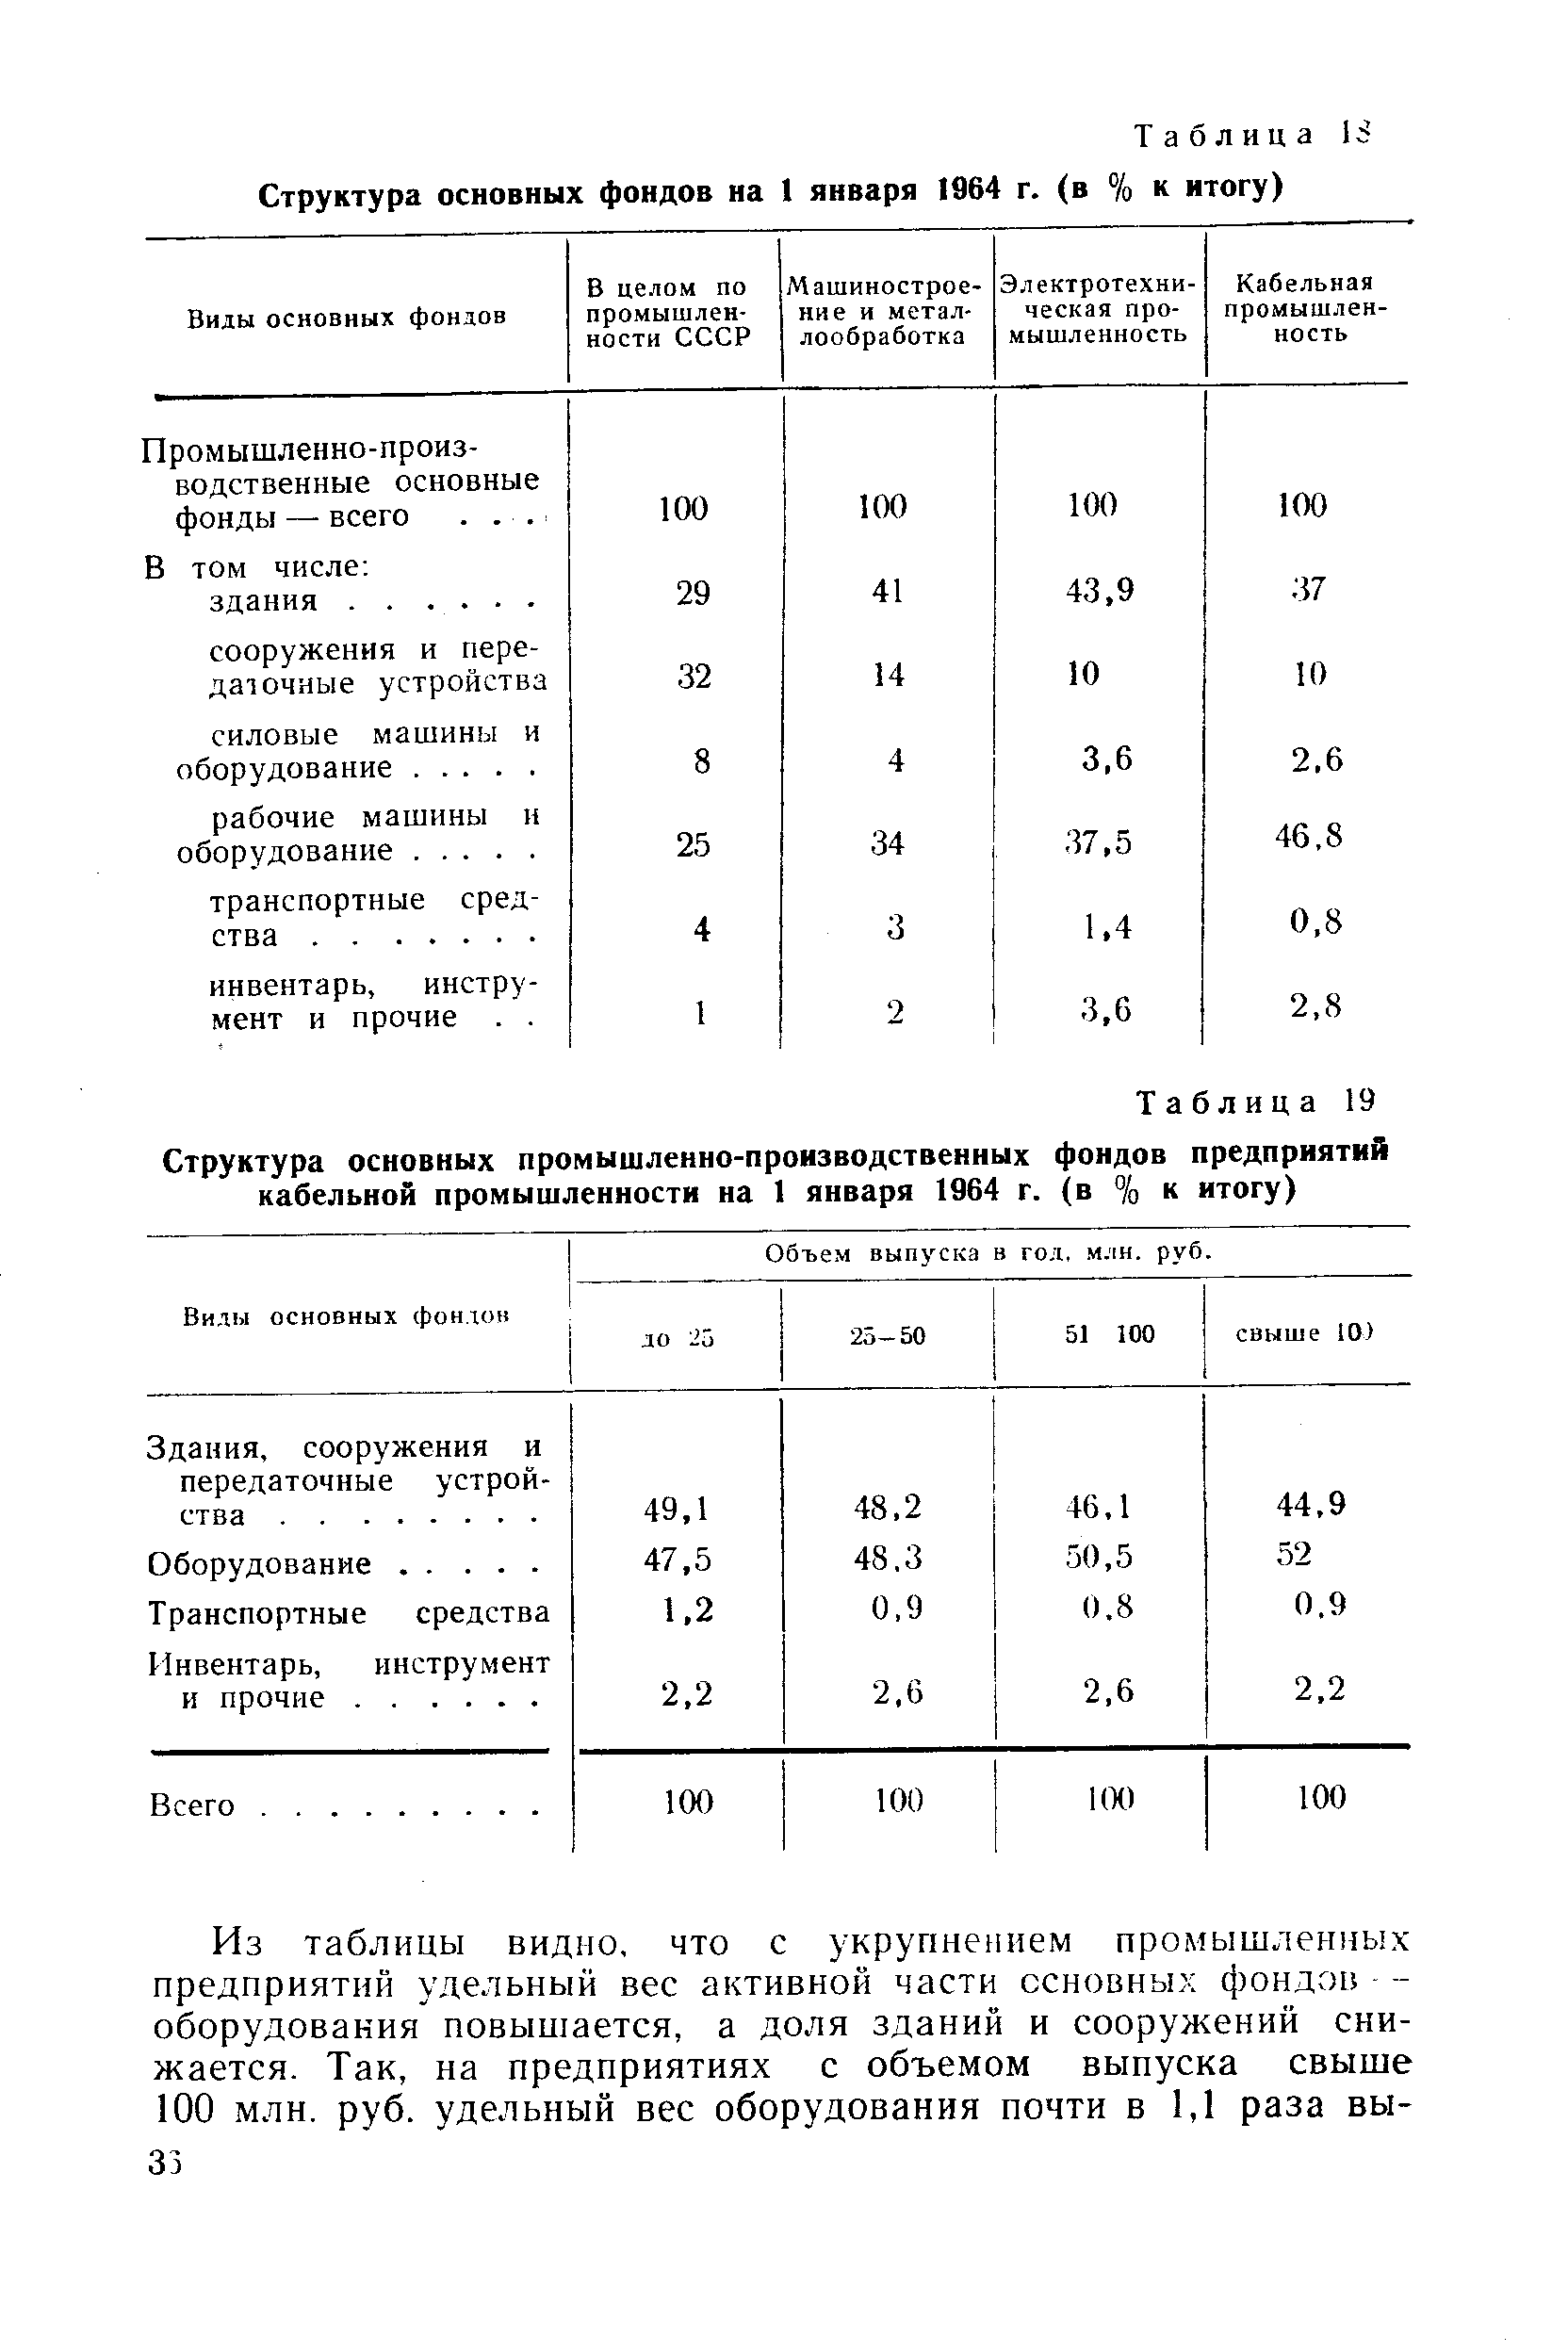 Таблица <a href="/info/1286">Структура основных фондов</a> на 1 января 1964 г. (в % к итогу)
